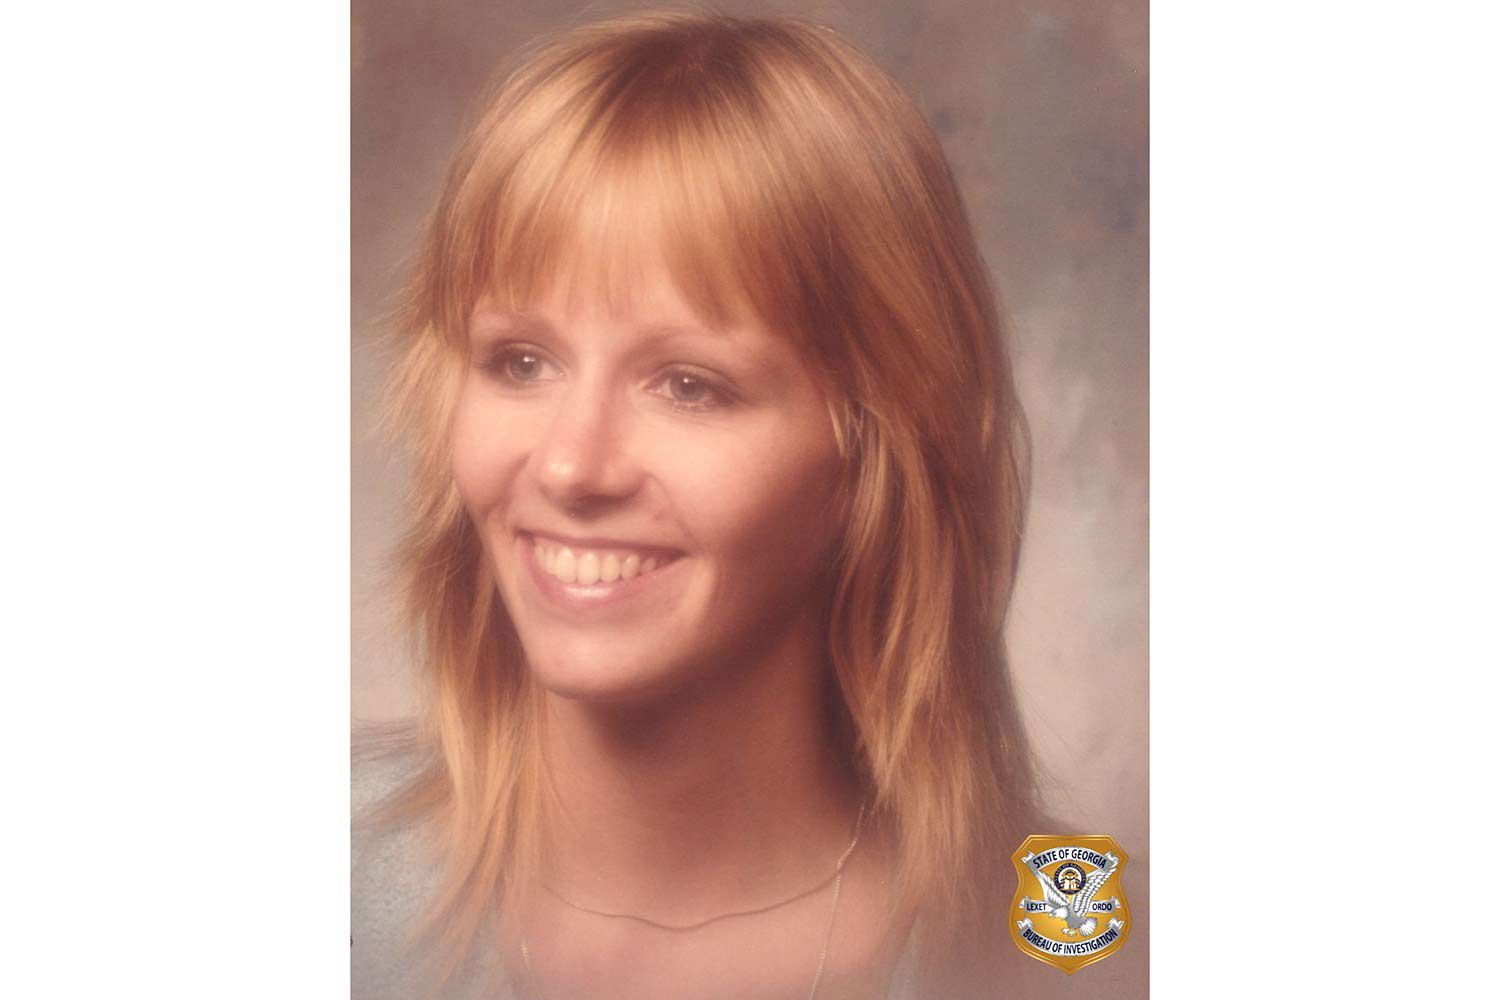 Donna morta 37 anni fa dopo essere stata trovata priva di sensi sull'autostrada Ga. Identificata come mamma scomparsa di 4 figli